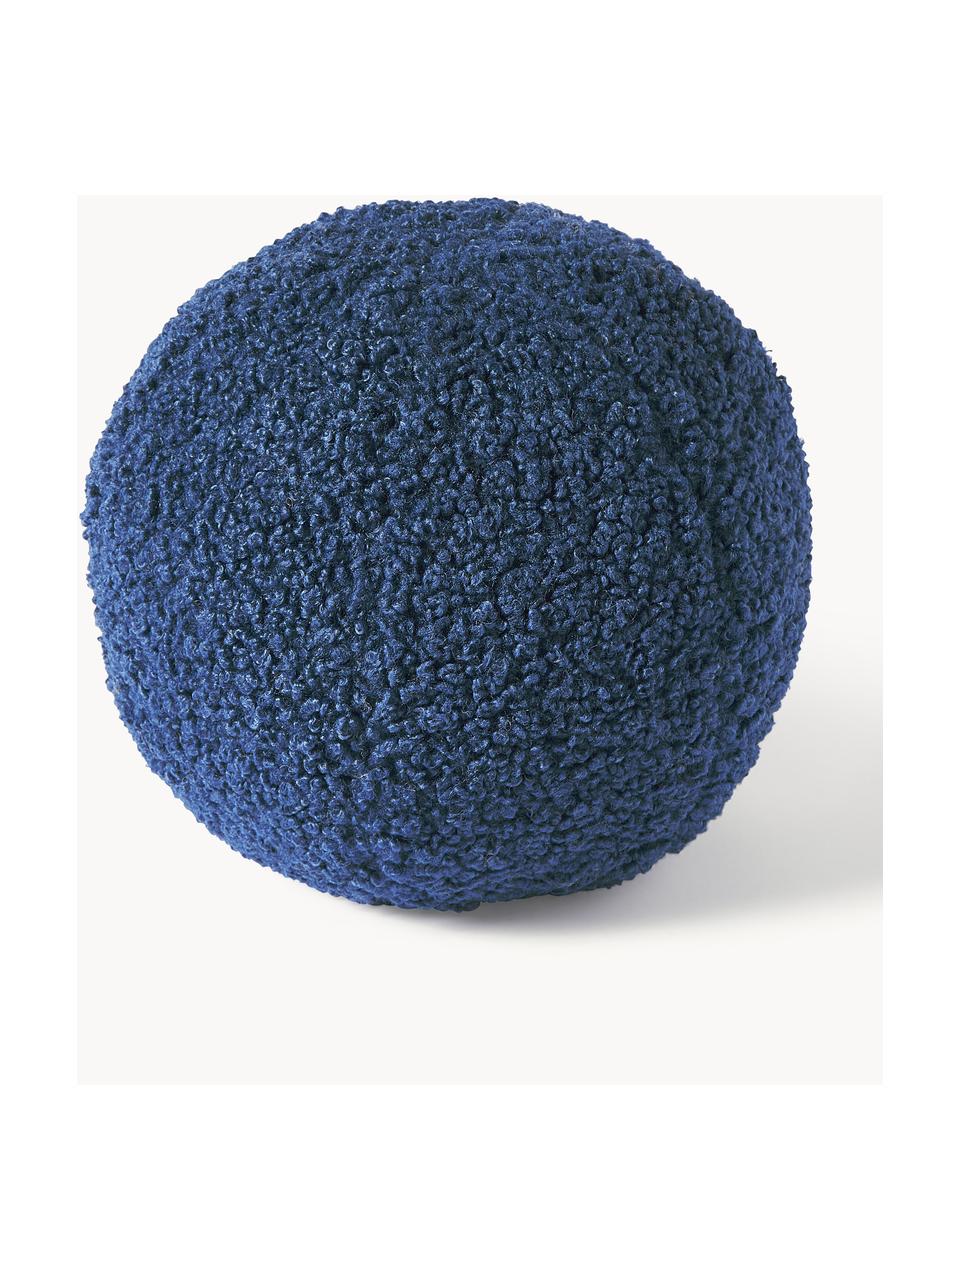 Okrągła poduszka Teddy Dotty, Tapicerka: Teddy (100% poliester), Ciemny niebieski, Ø 30 cm